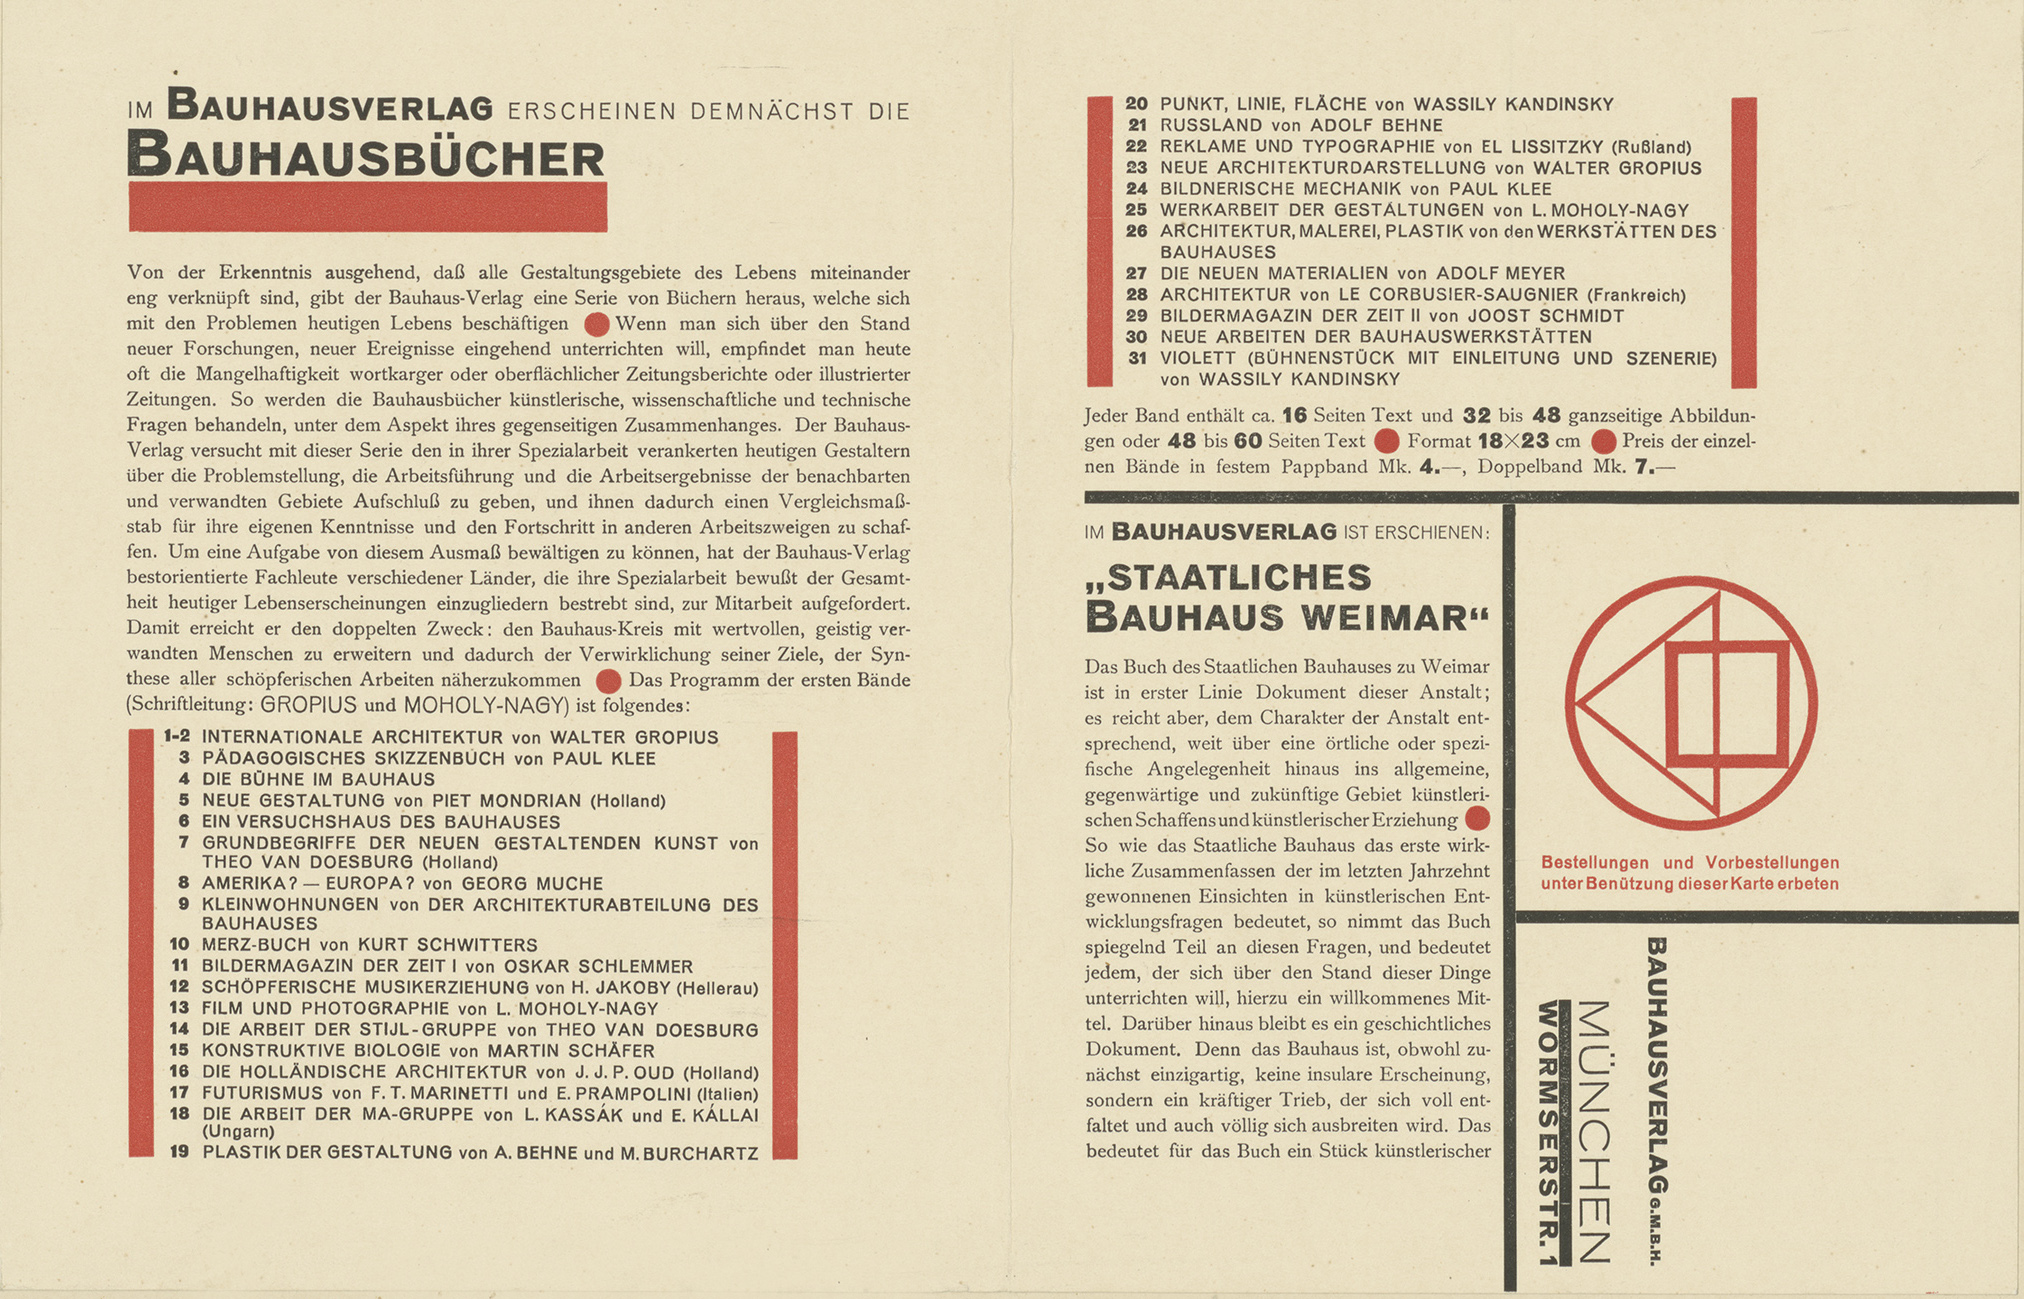 László Moholy-Nagy, Gestaltung für die Bauhausbücher, 1919. Aus: Wohin geht die typographische Entwicklung, Tafel 22, 1929. © Kunstbibliothek, Staatliche Museen zu Berlin​